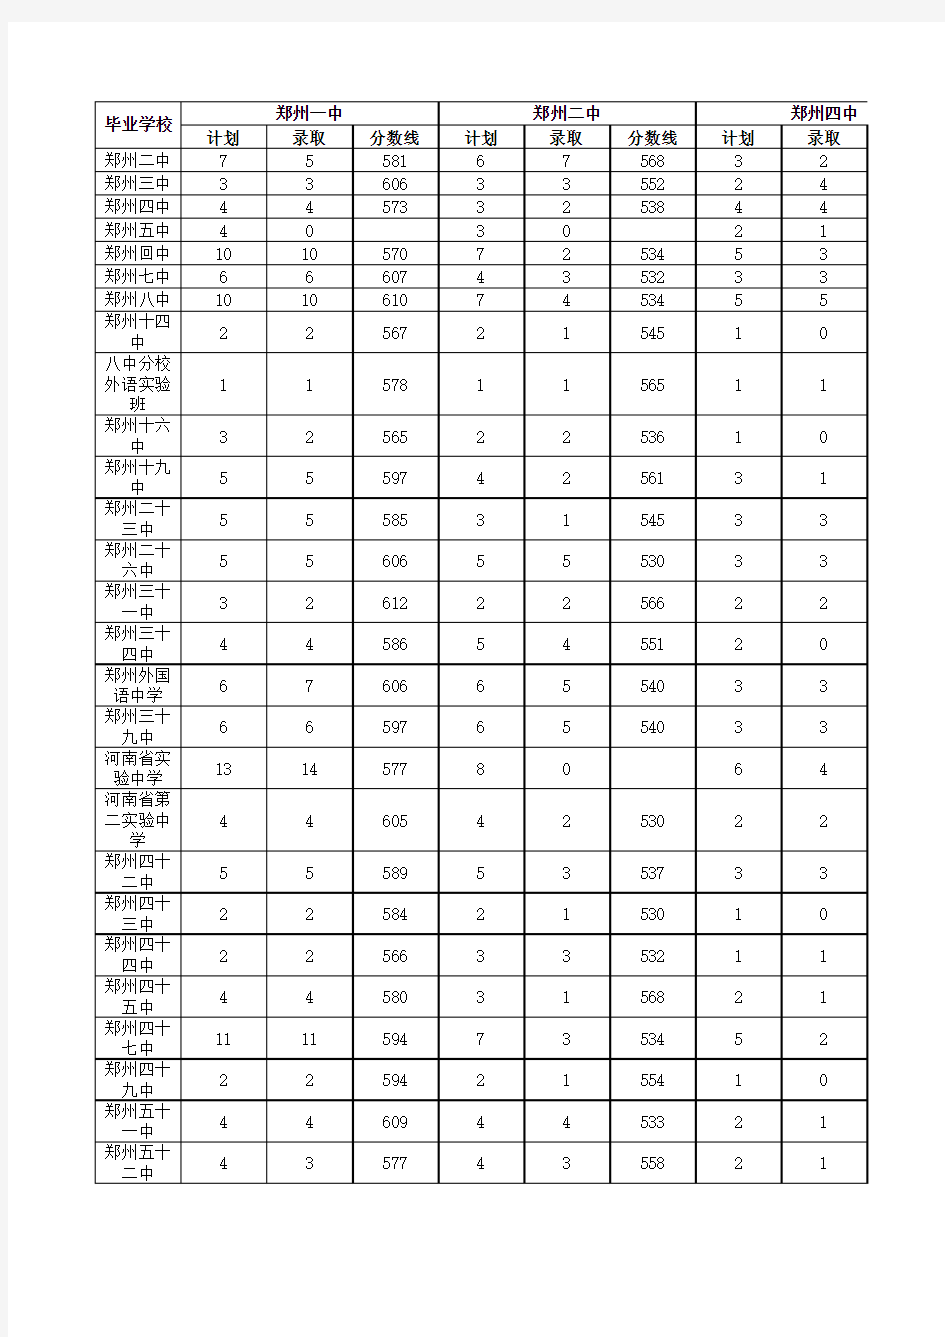 2013年郑州市普通高中招生考试分配生分数线及录取情况表介绍